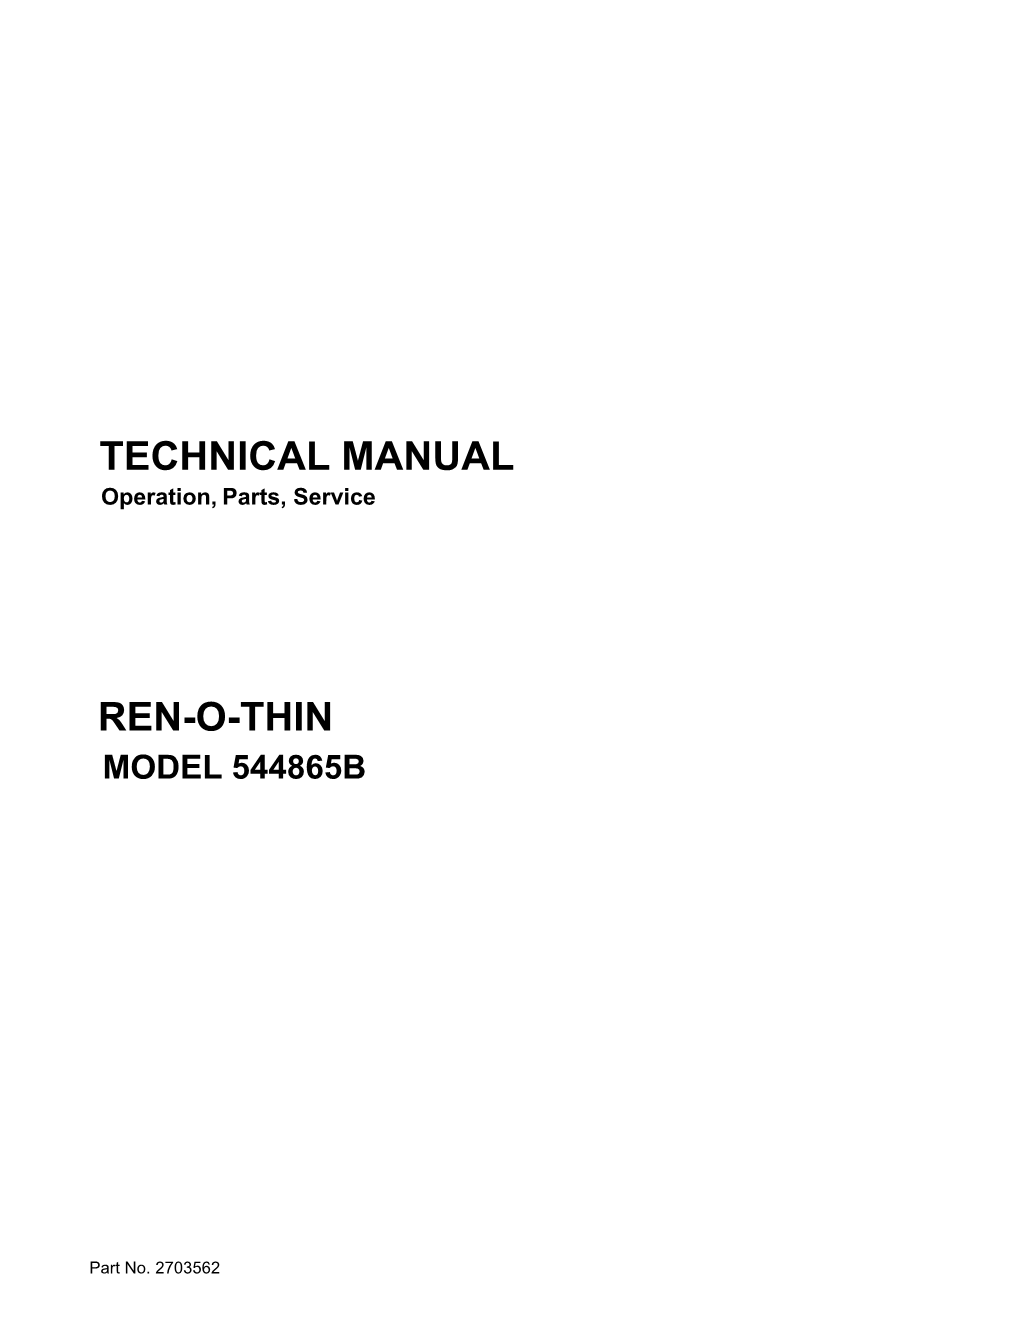 Technical Manual Ren-O-Thin